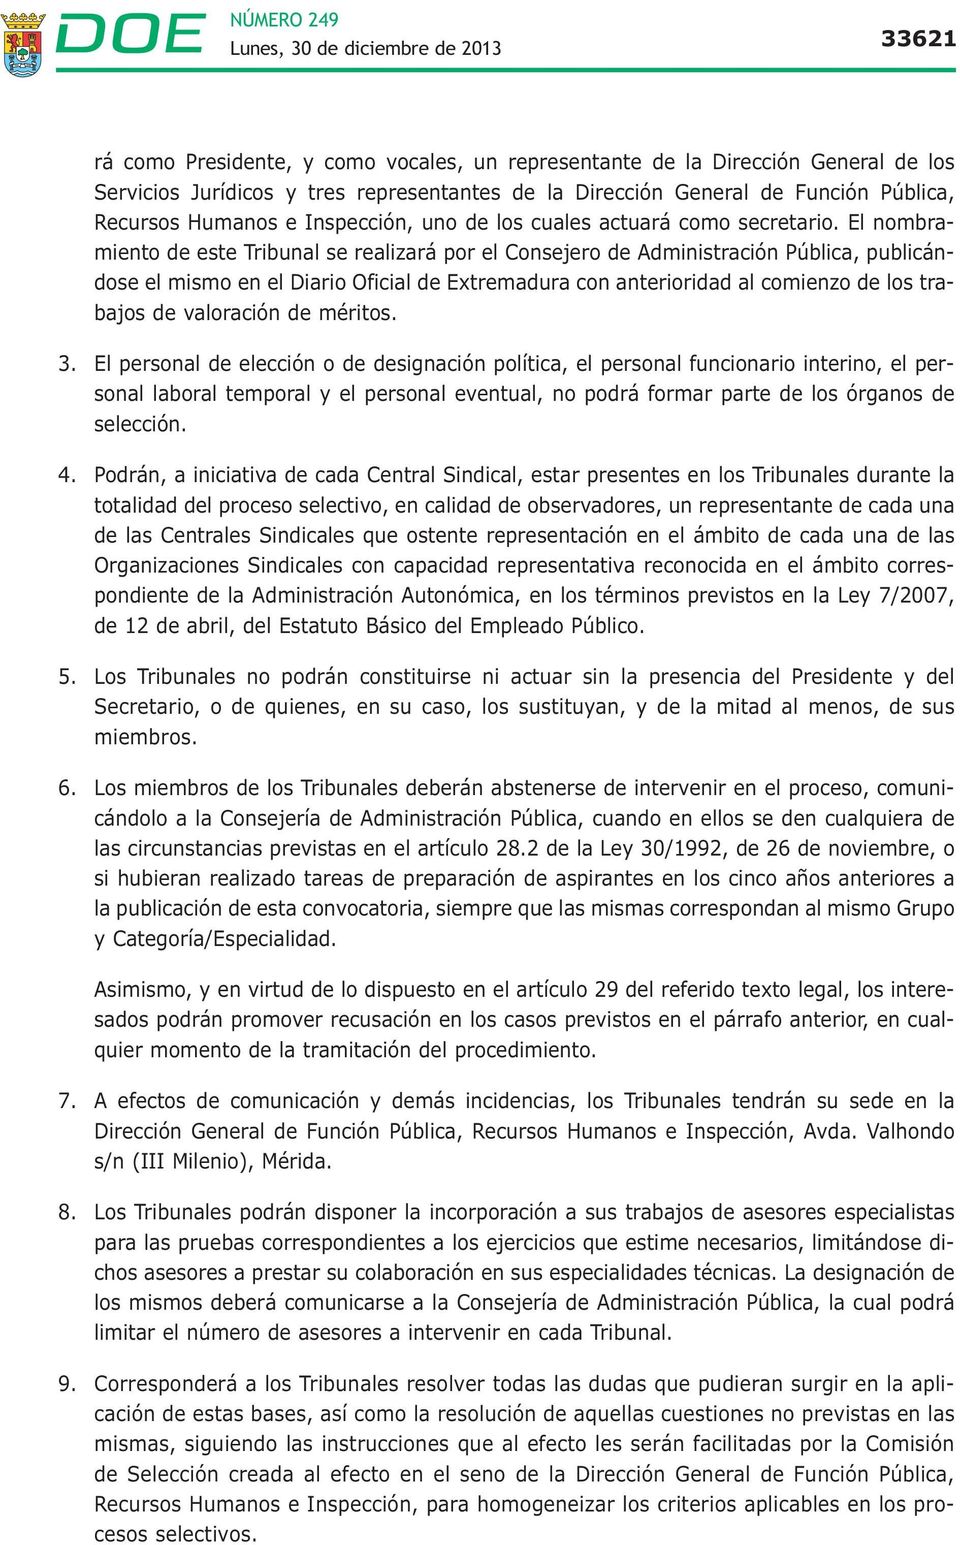 El nombramiento de este Tribunal se realizará por el Consejero de Administración Pública, publicándose el mismo en el Diario Oficial de Extremadura con anterioridad al comienzo de los trabajos de